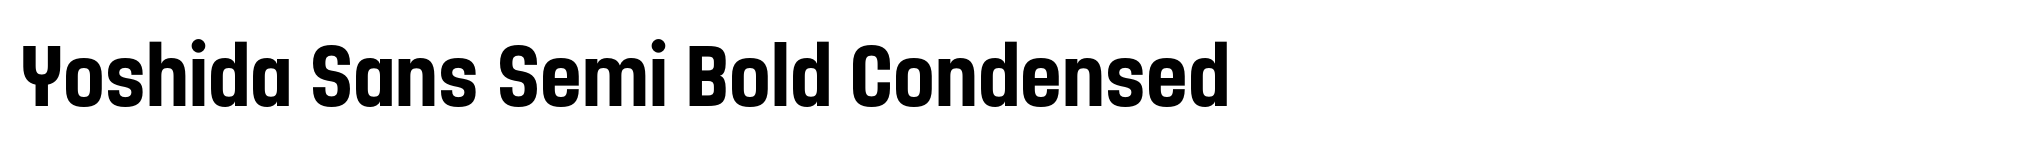 Yoshida Sans Semi Bold Condensed image